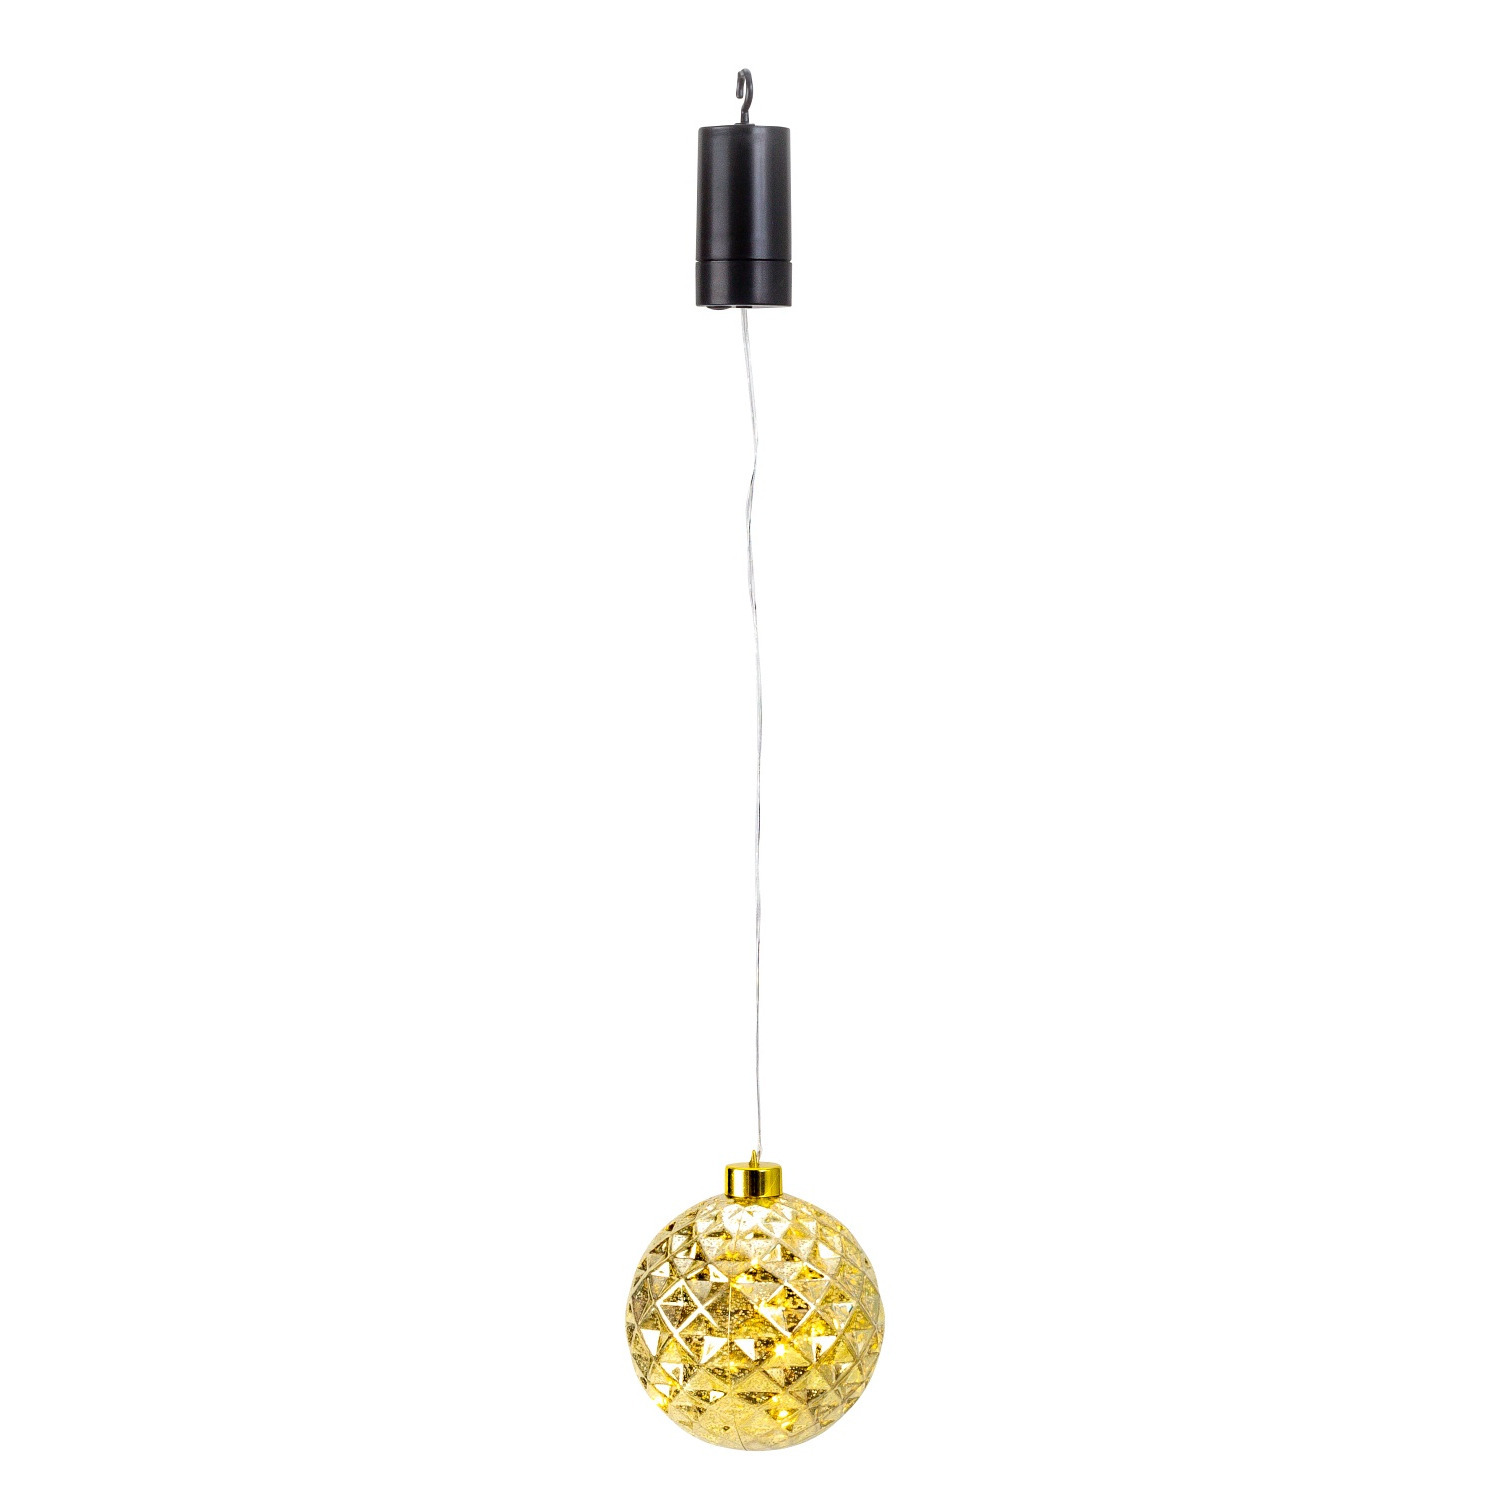 IKO kerstbal goud met led verlichting- D12 cm aan draad